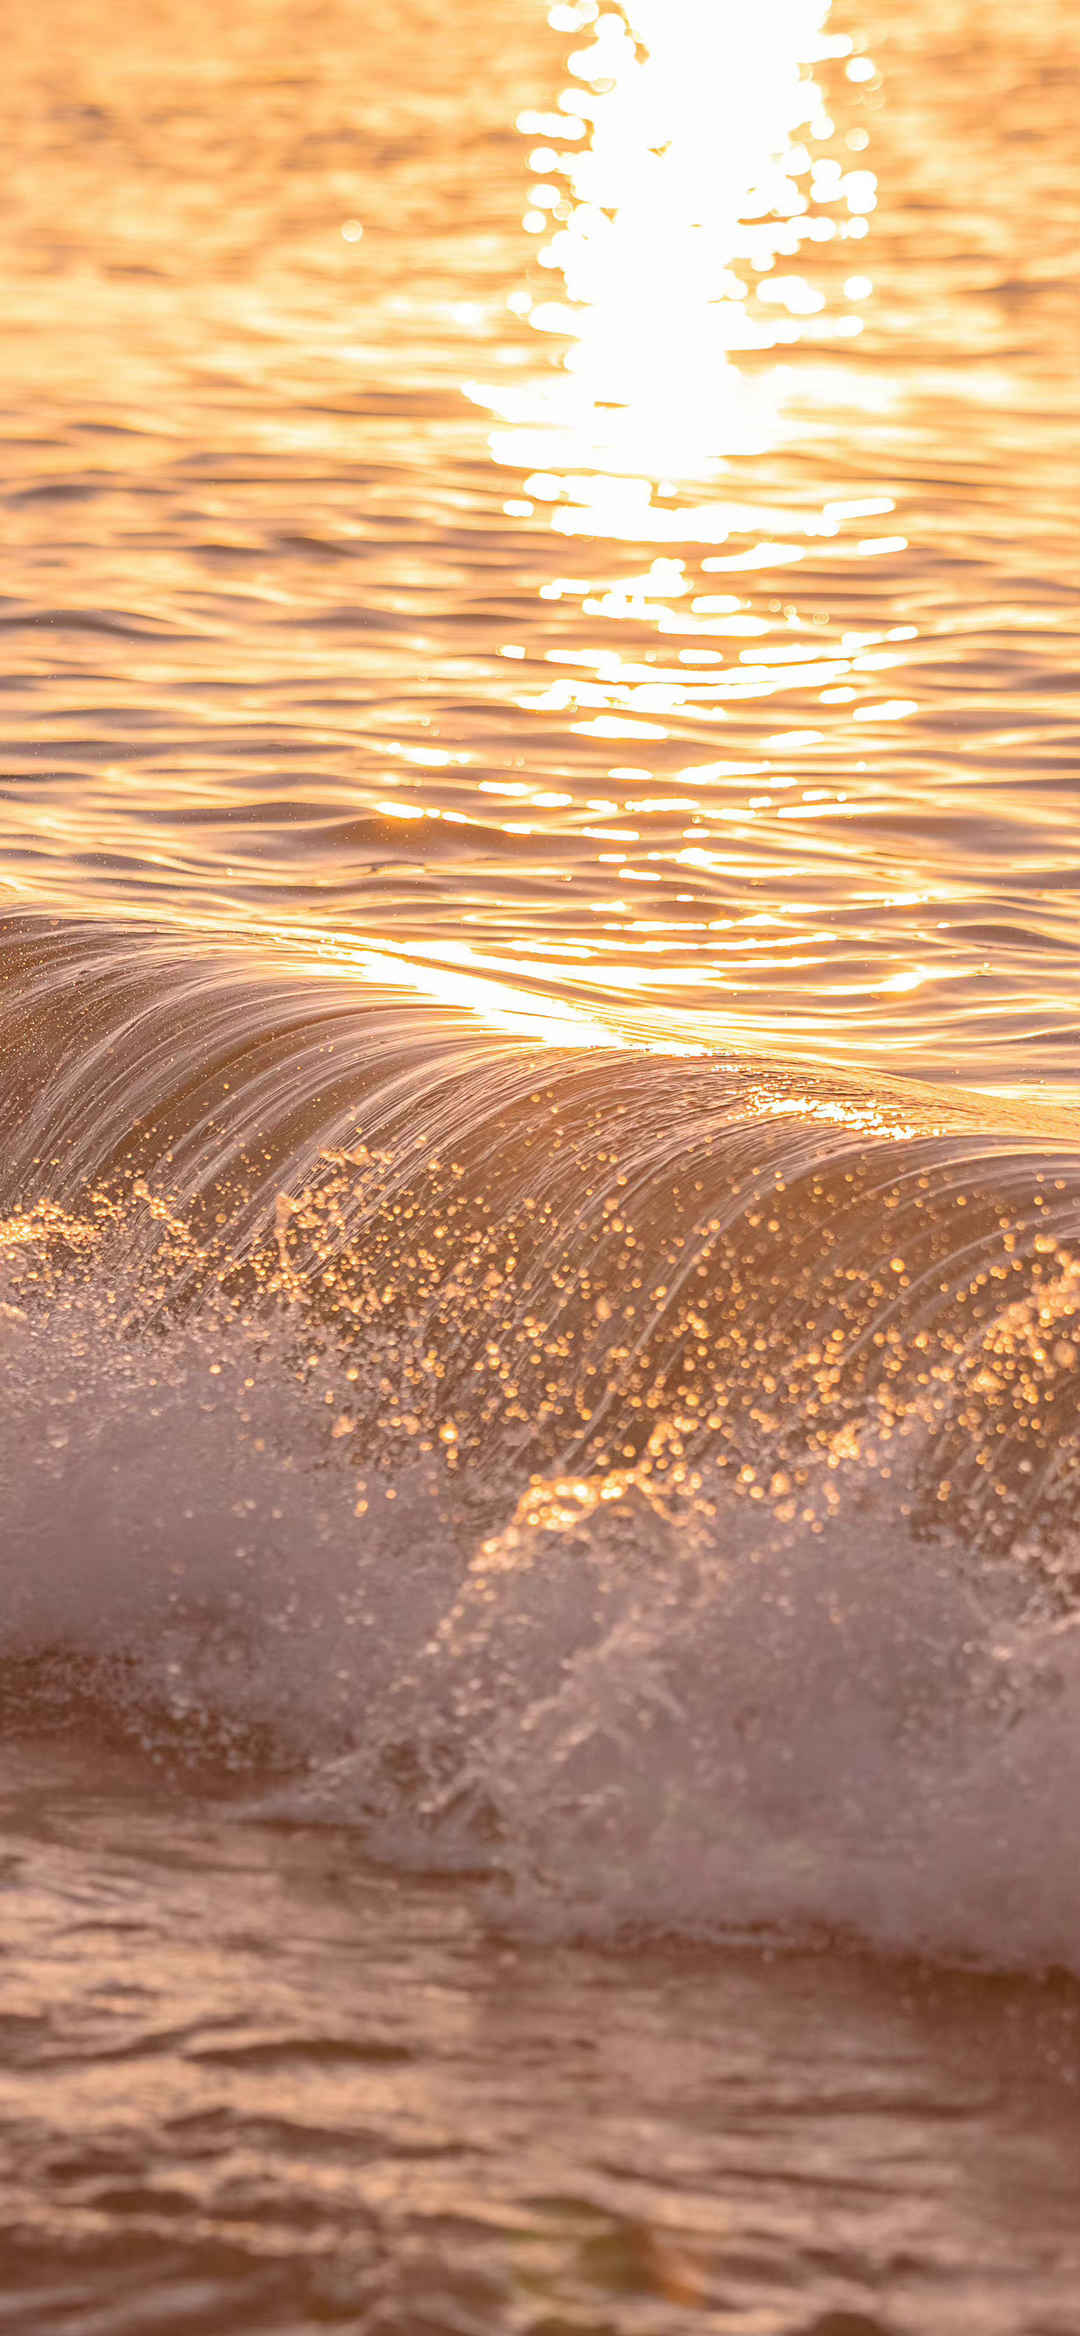 日落黄昏海水流动图片